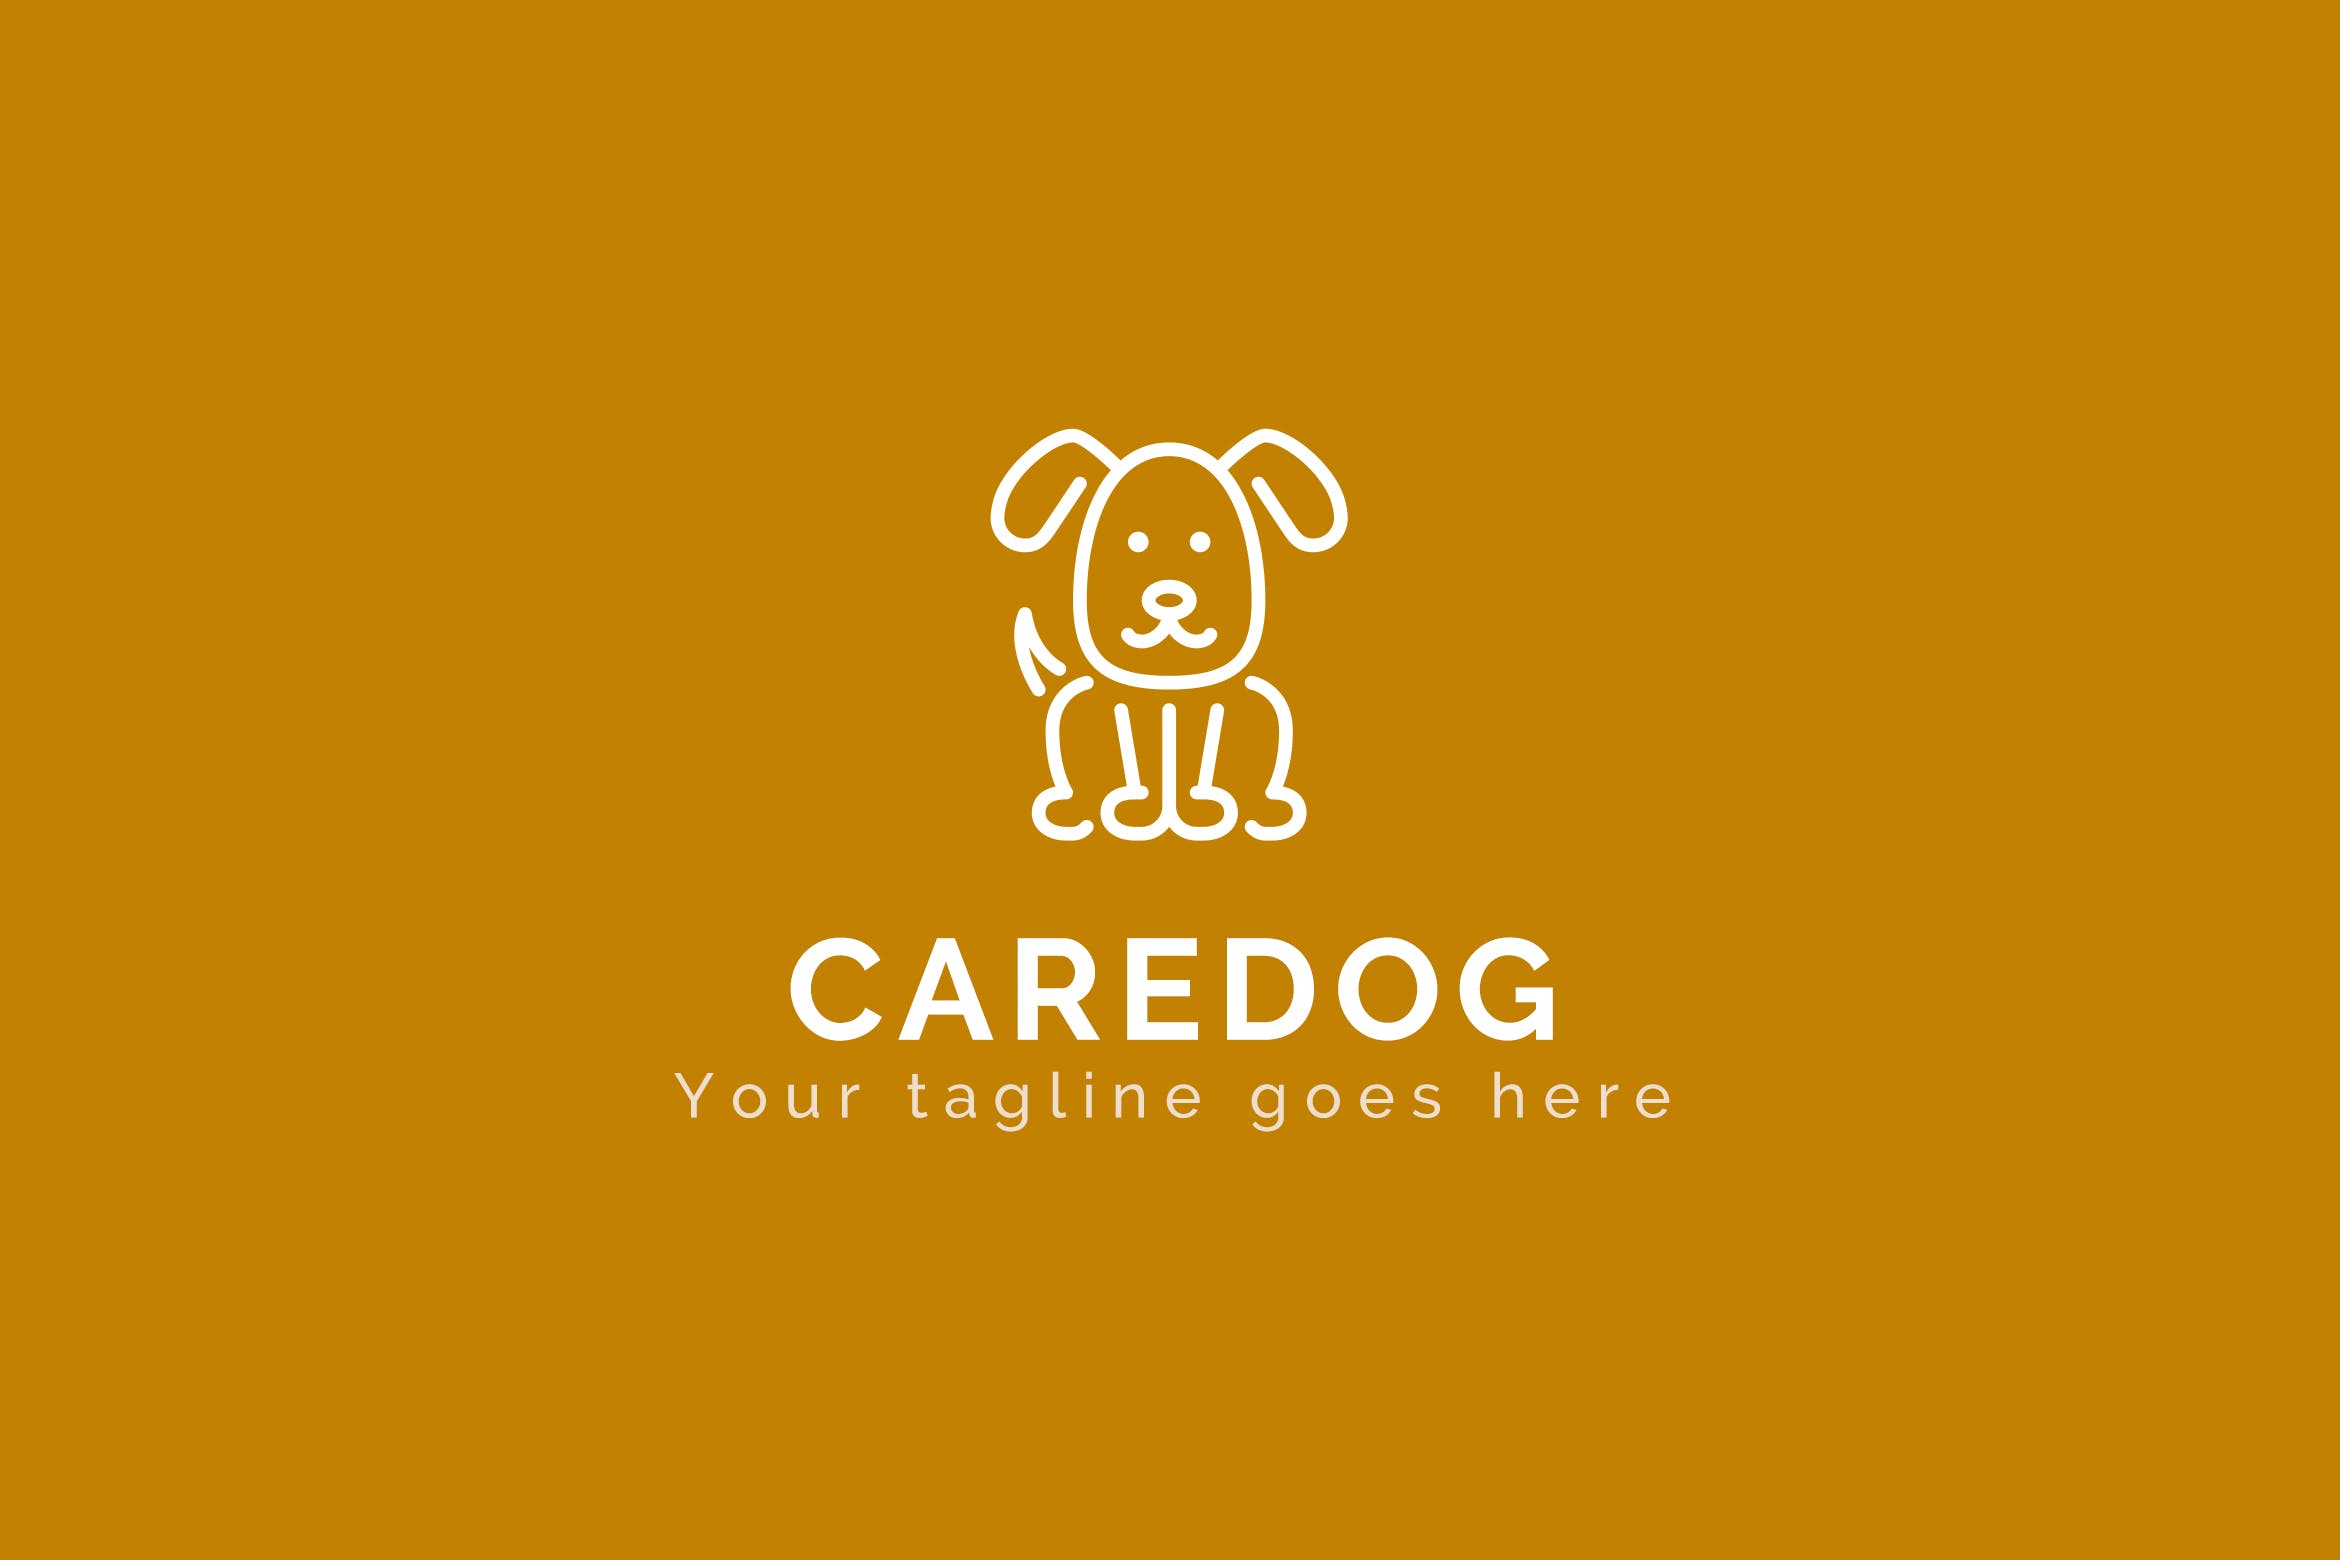 看护犬动物Logo设计第一素材精选模板 Caredog – Animal Logo Template插图